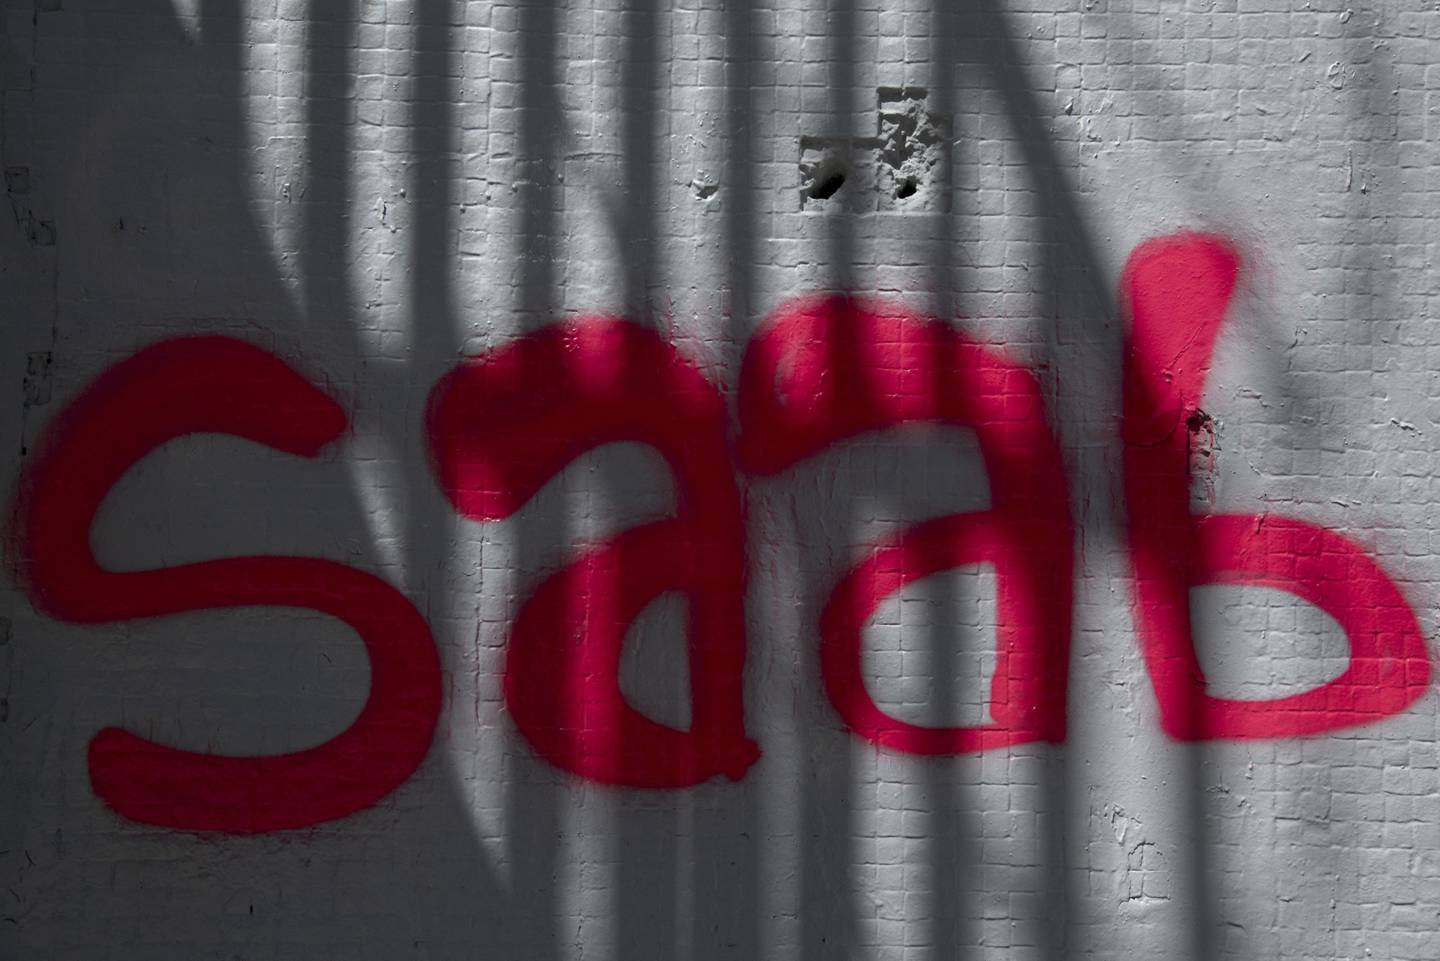 Una pared con un graffiti que dice "Saab" en Caracas, Venezuela, el jueves 4 de febrero de 2021.dfd